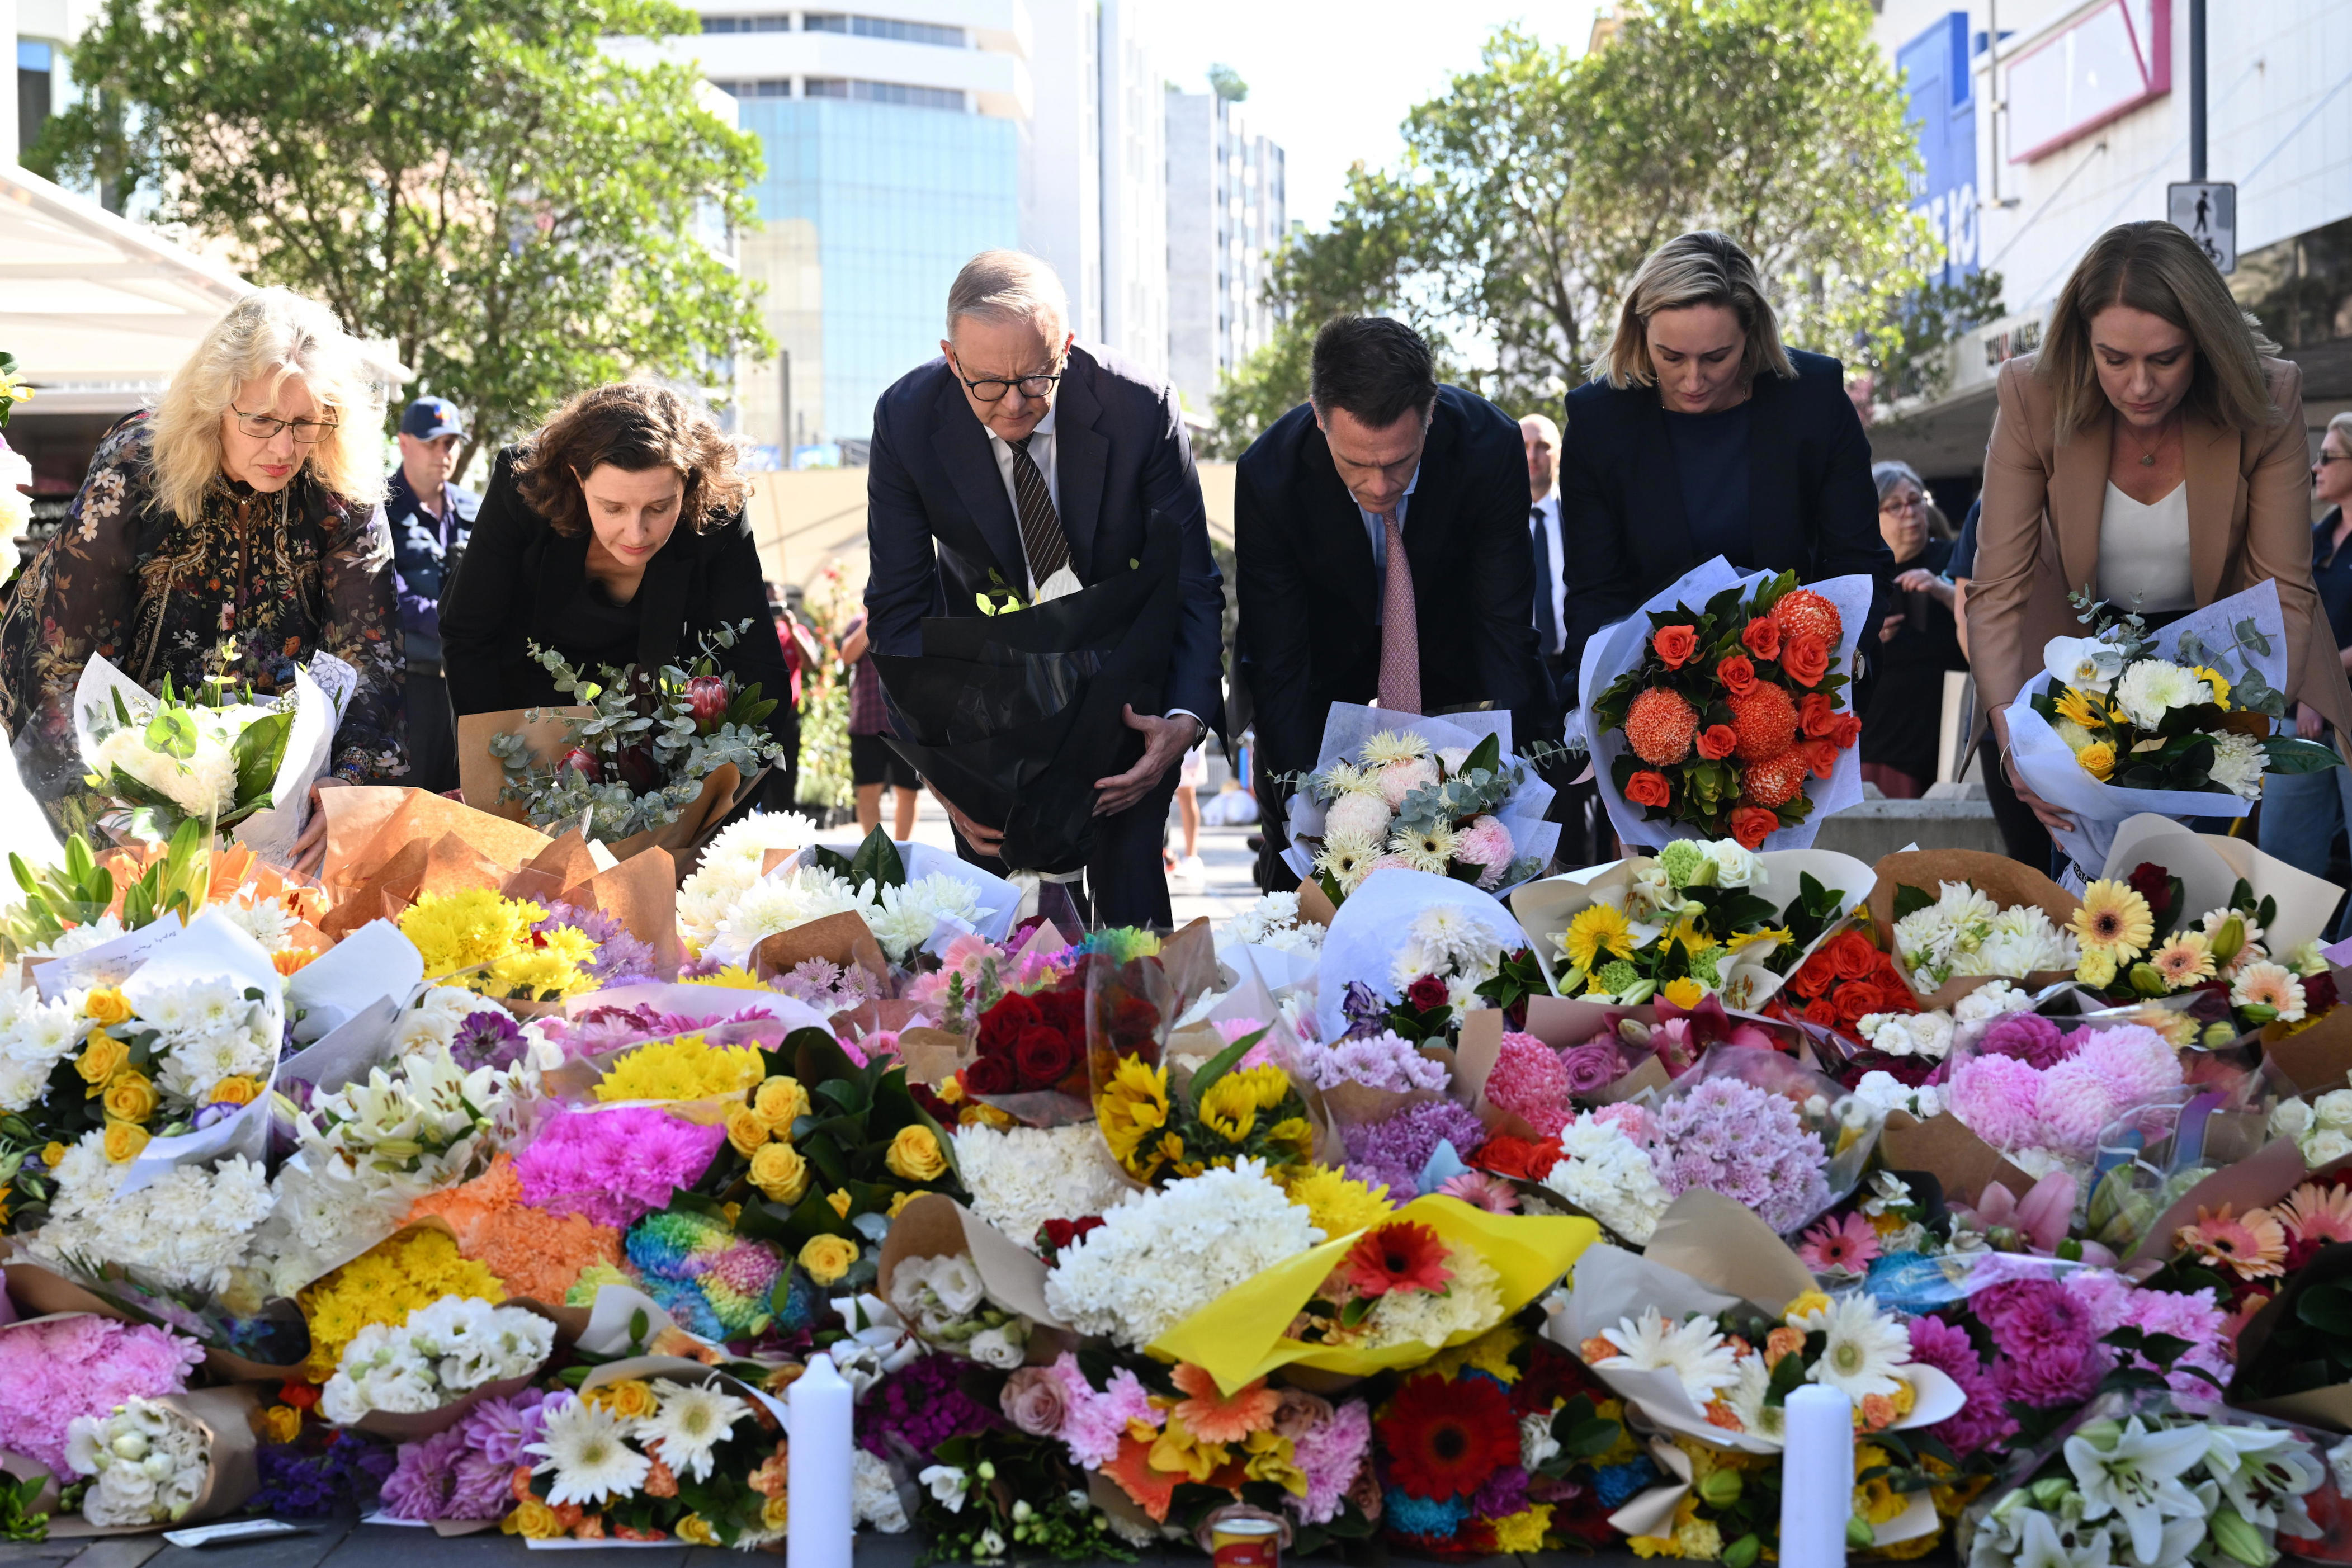 el atacante de sydney: 40 años, largo historial de problemas mentales y sin lazos extremistas